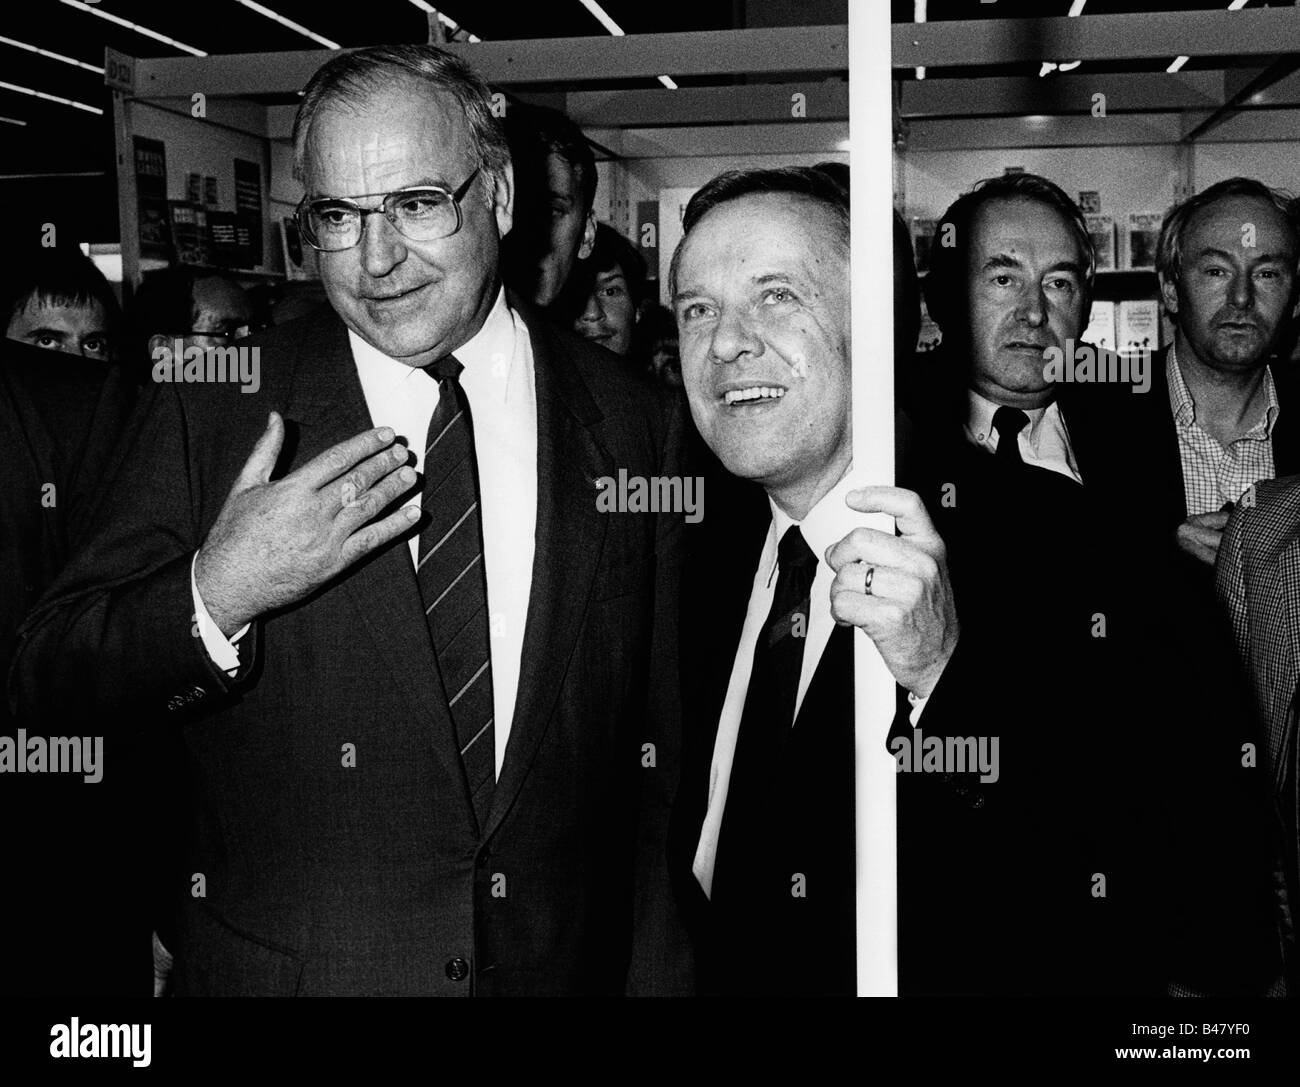 Kohl, Helmut, * 3.4.1930, politico tedesco (CDU), cancelliere della Germania 1982-1998, a metà lunghezza, con Walter Wallmann, sindaco di Francoforte sul meno, fiera del libro, ottobre 1985, Foto Stock